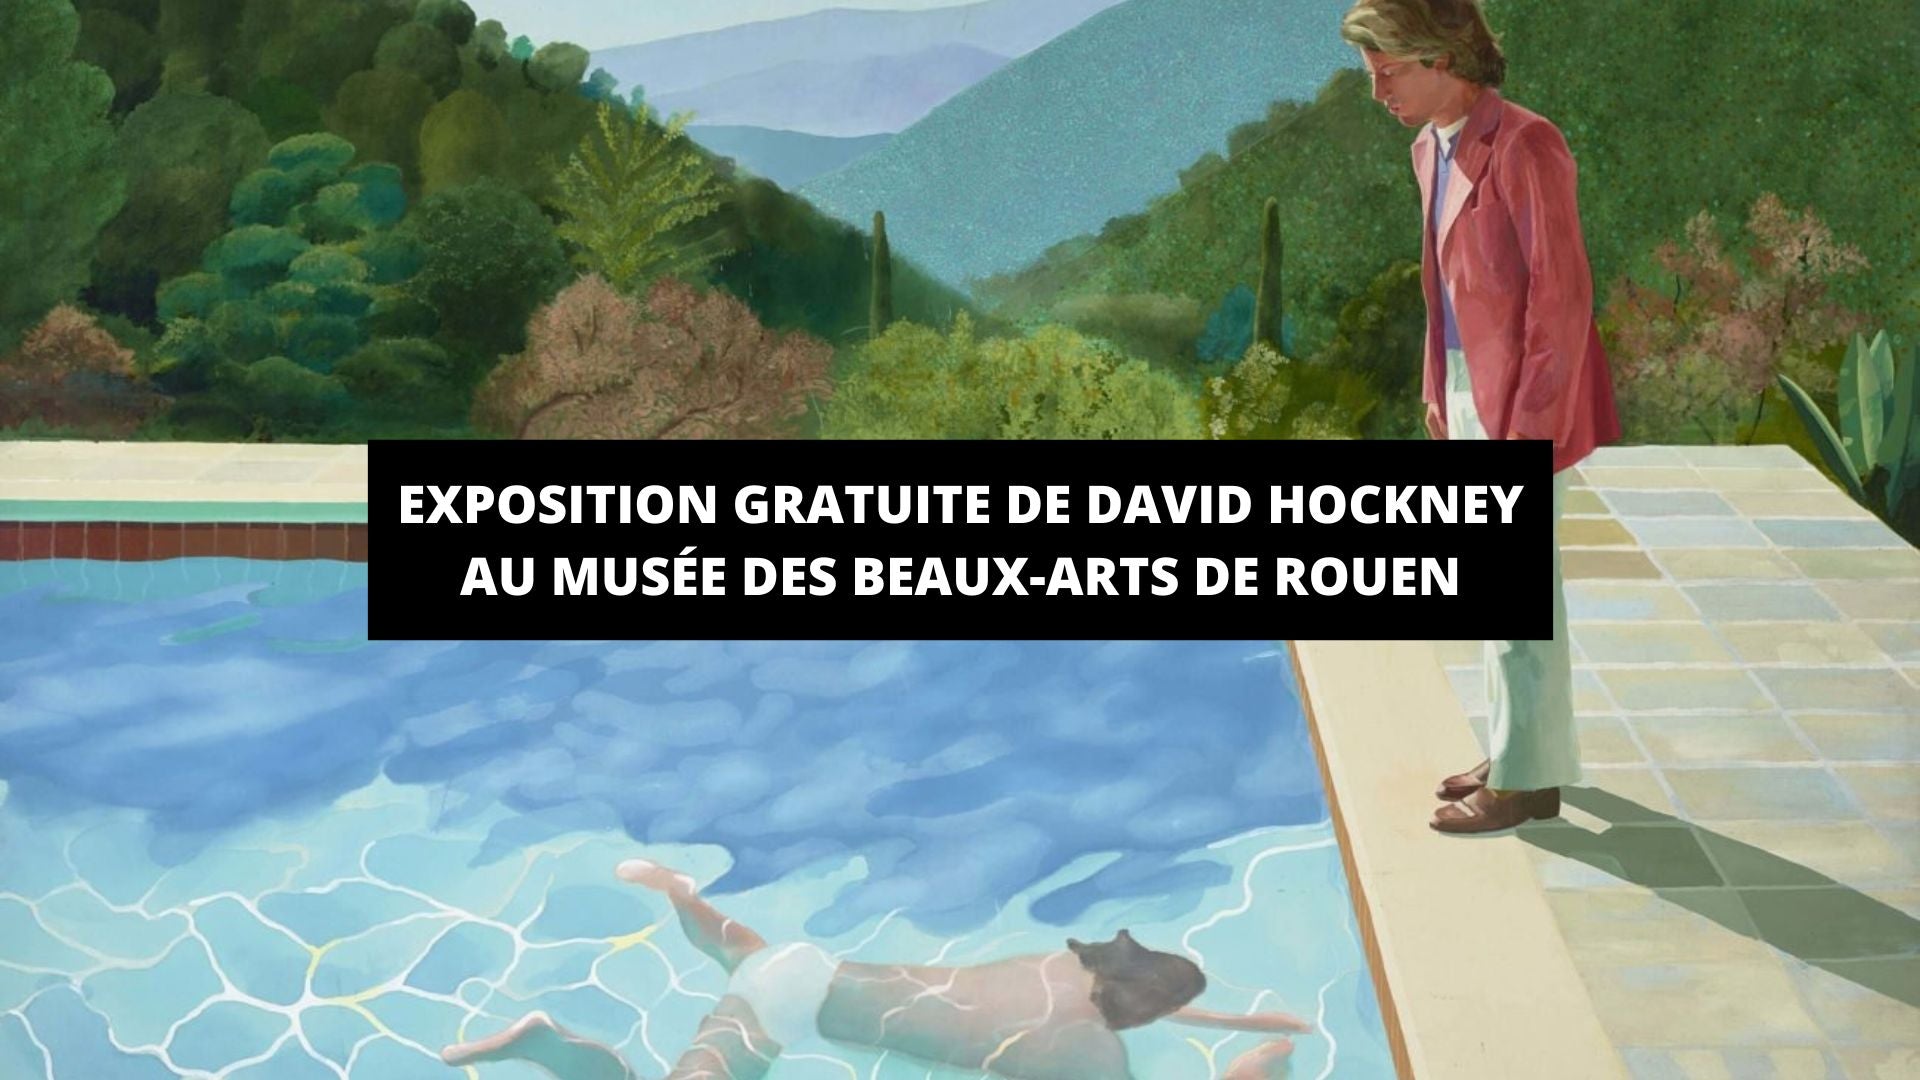 Exposition gratuite de David Hockney au musée des Beaux-Arts de Rouen - The Art Avenue